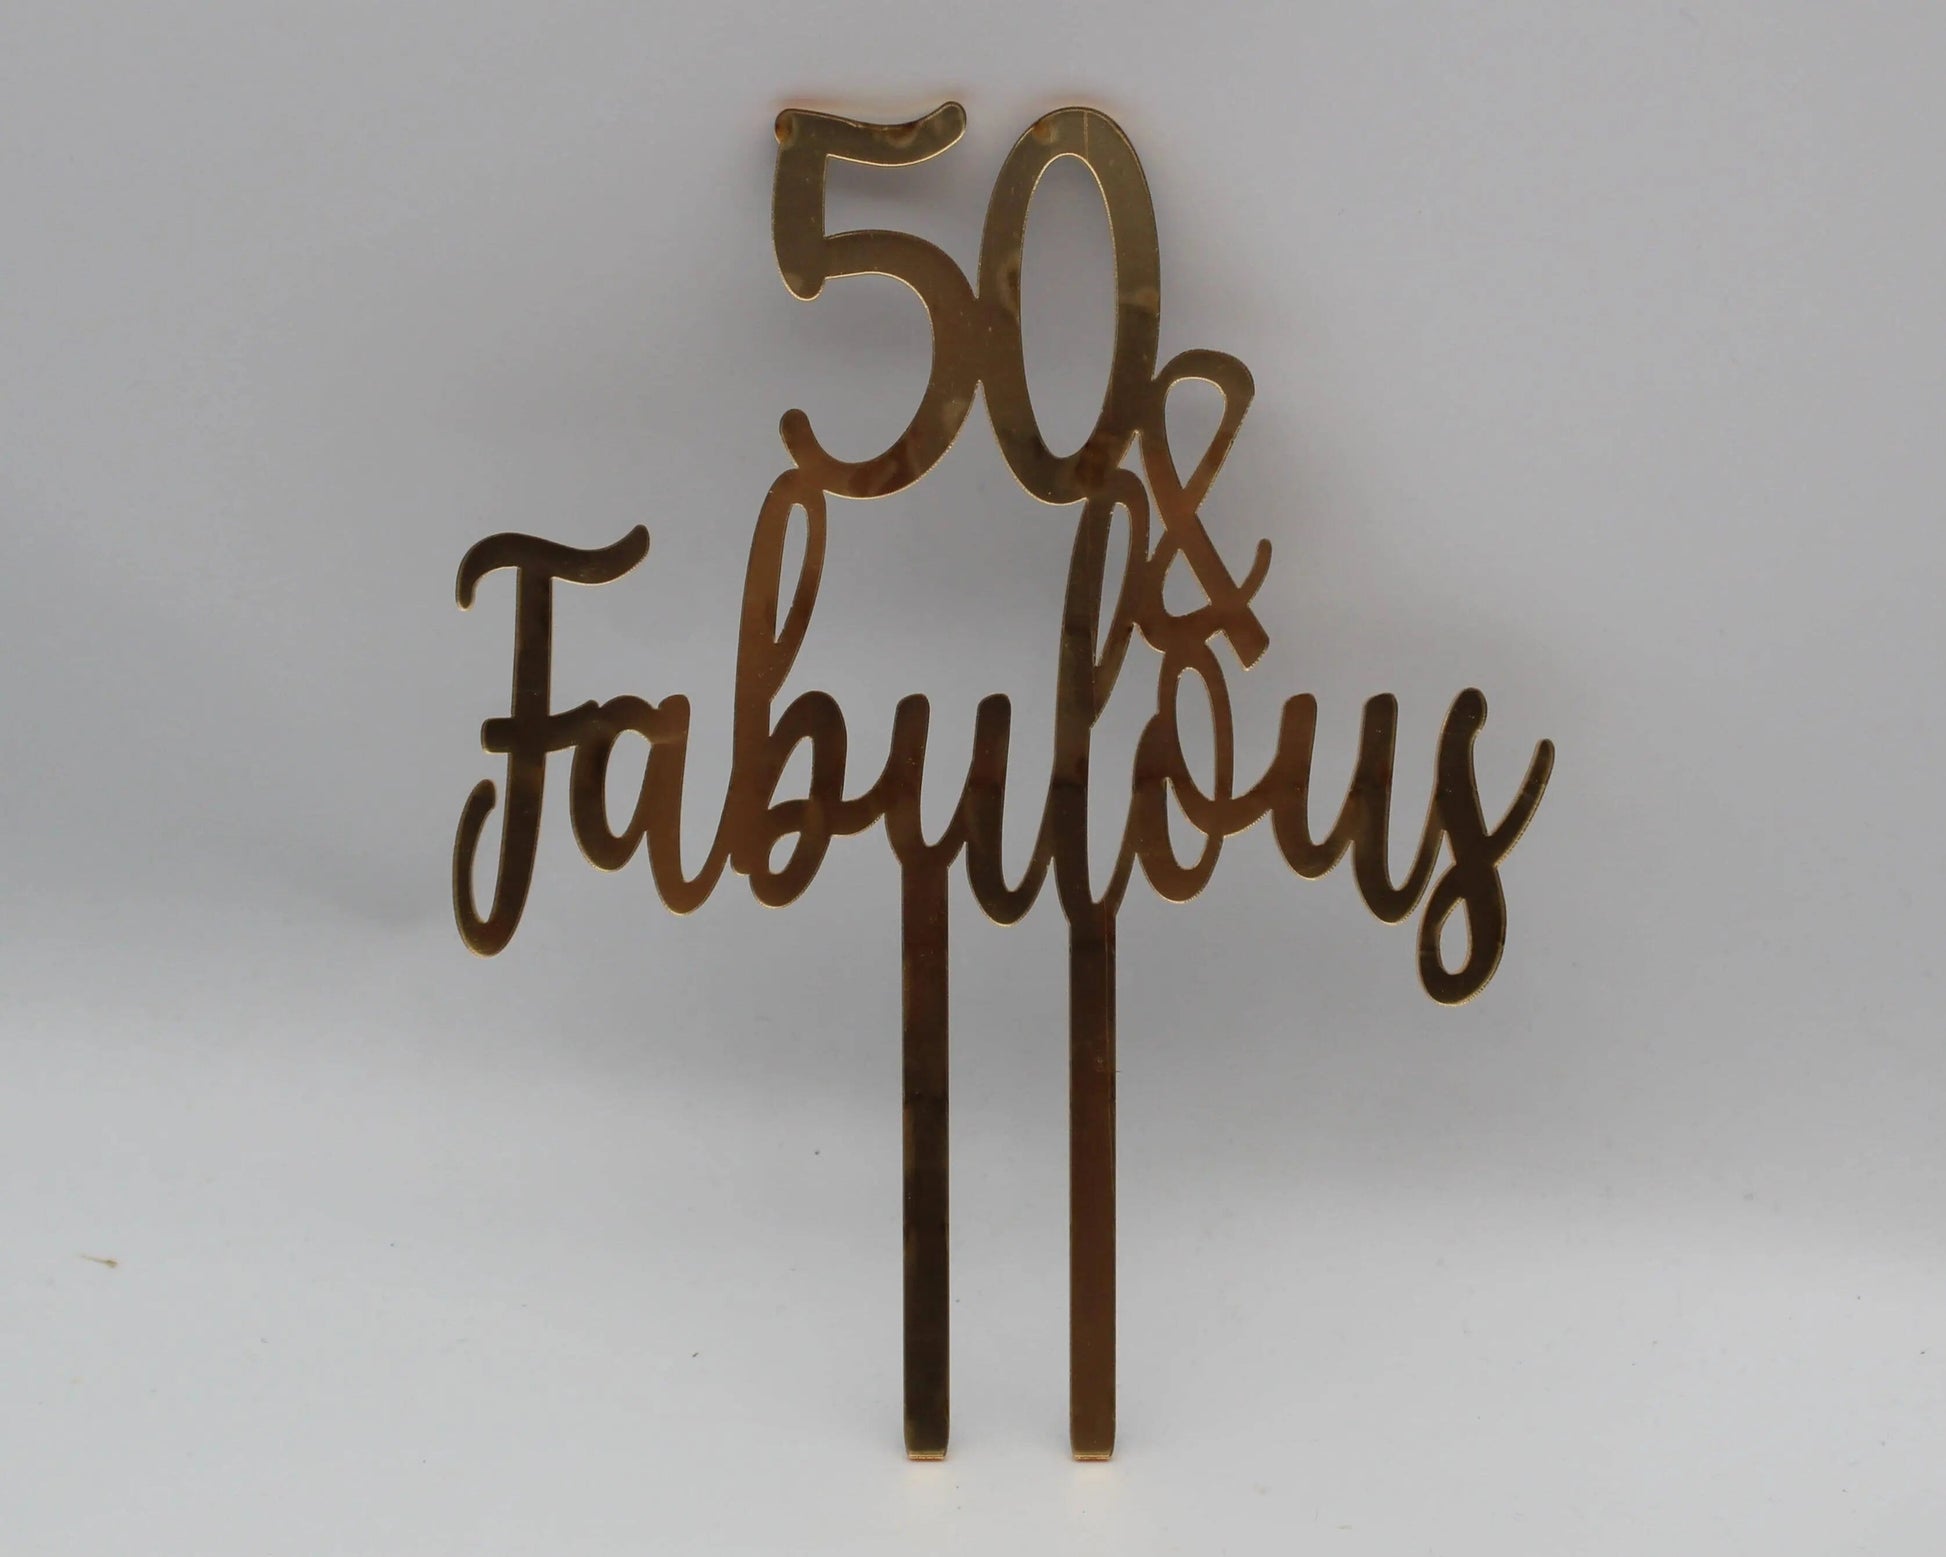 40, 50, etc. Fabulous Cake Topper - Haisley Design